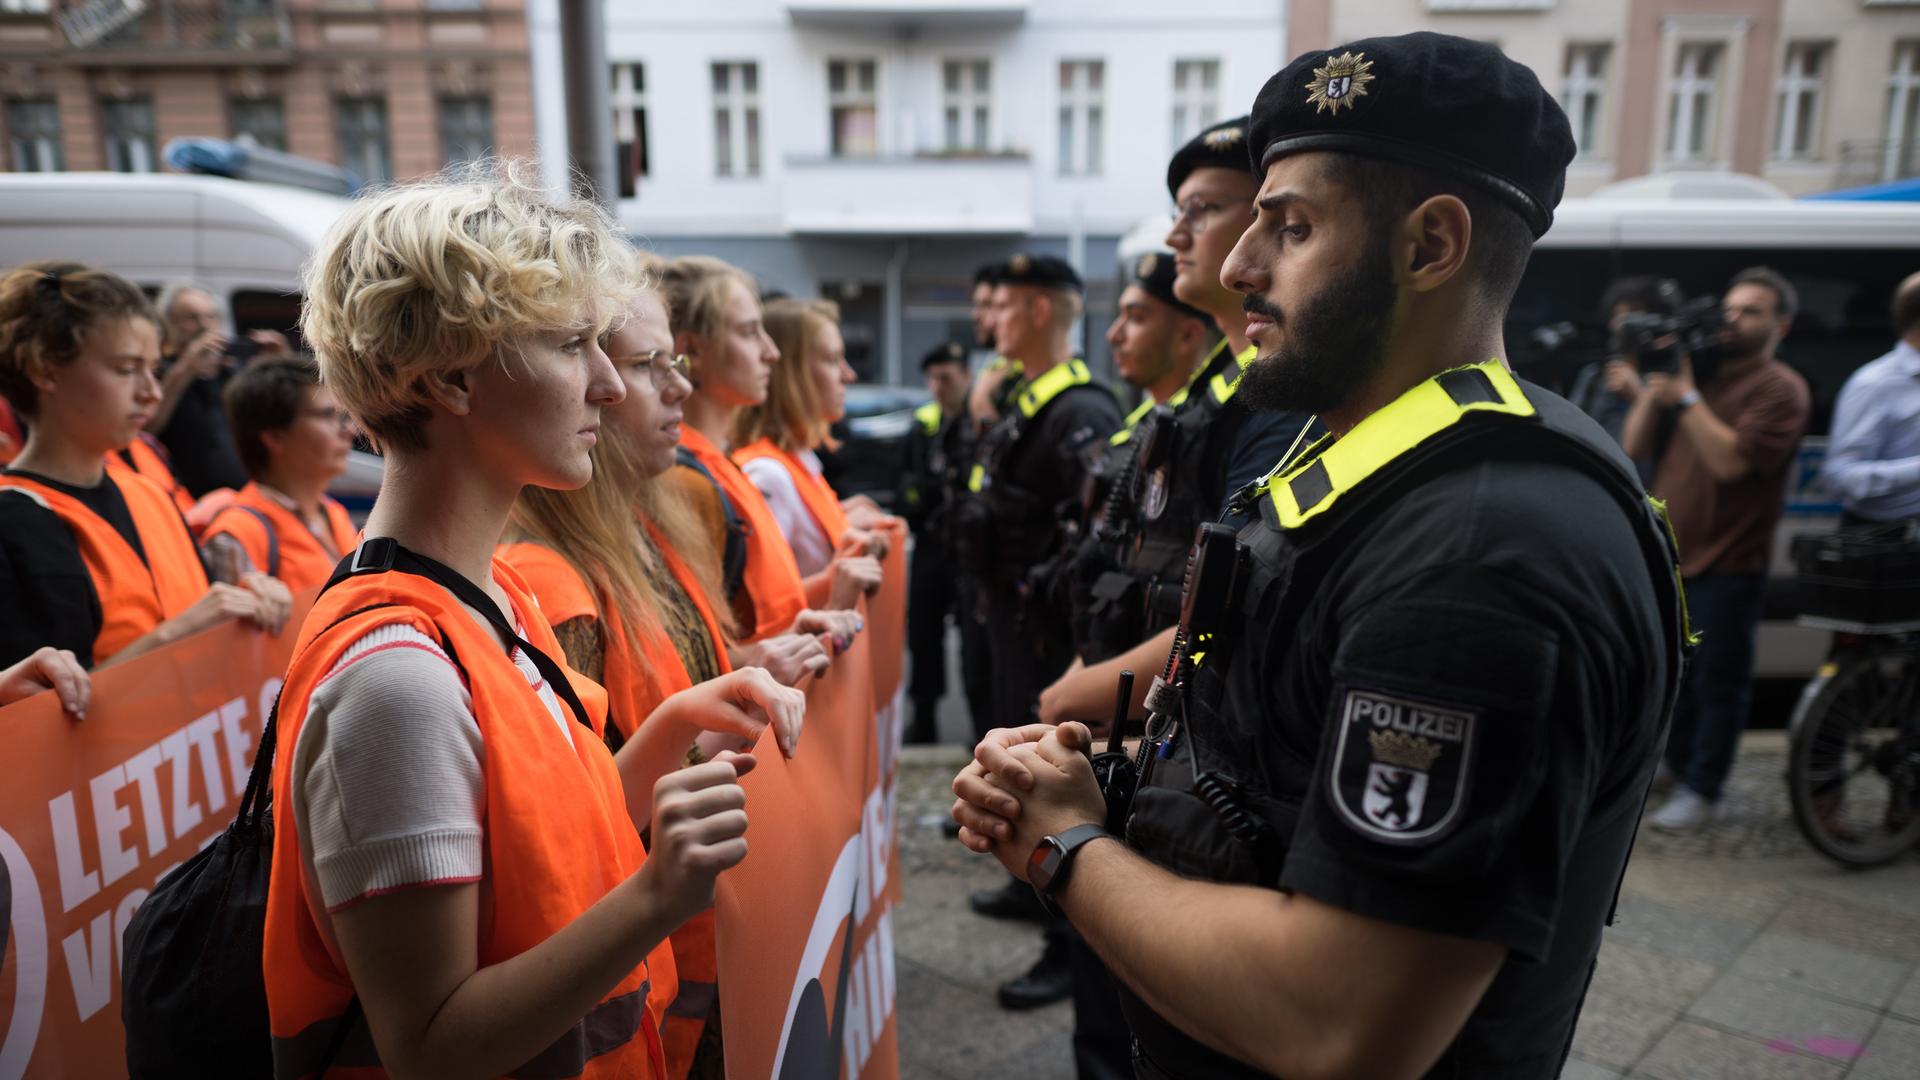 Polizeibeamte stehen zu Beginn eines Protestmarsches der Klimaschutzgruppe Letzte Generation vor Teilnehmern der Demonstration. Der Protestmarsch ist der Beginn neuer Blockaden und Protest in der Hauptstadt.